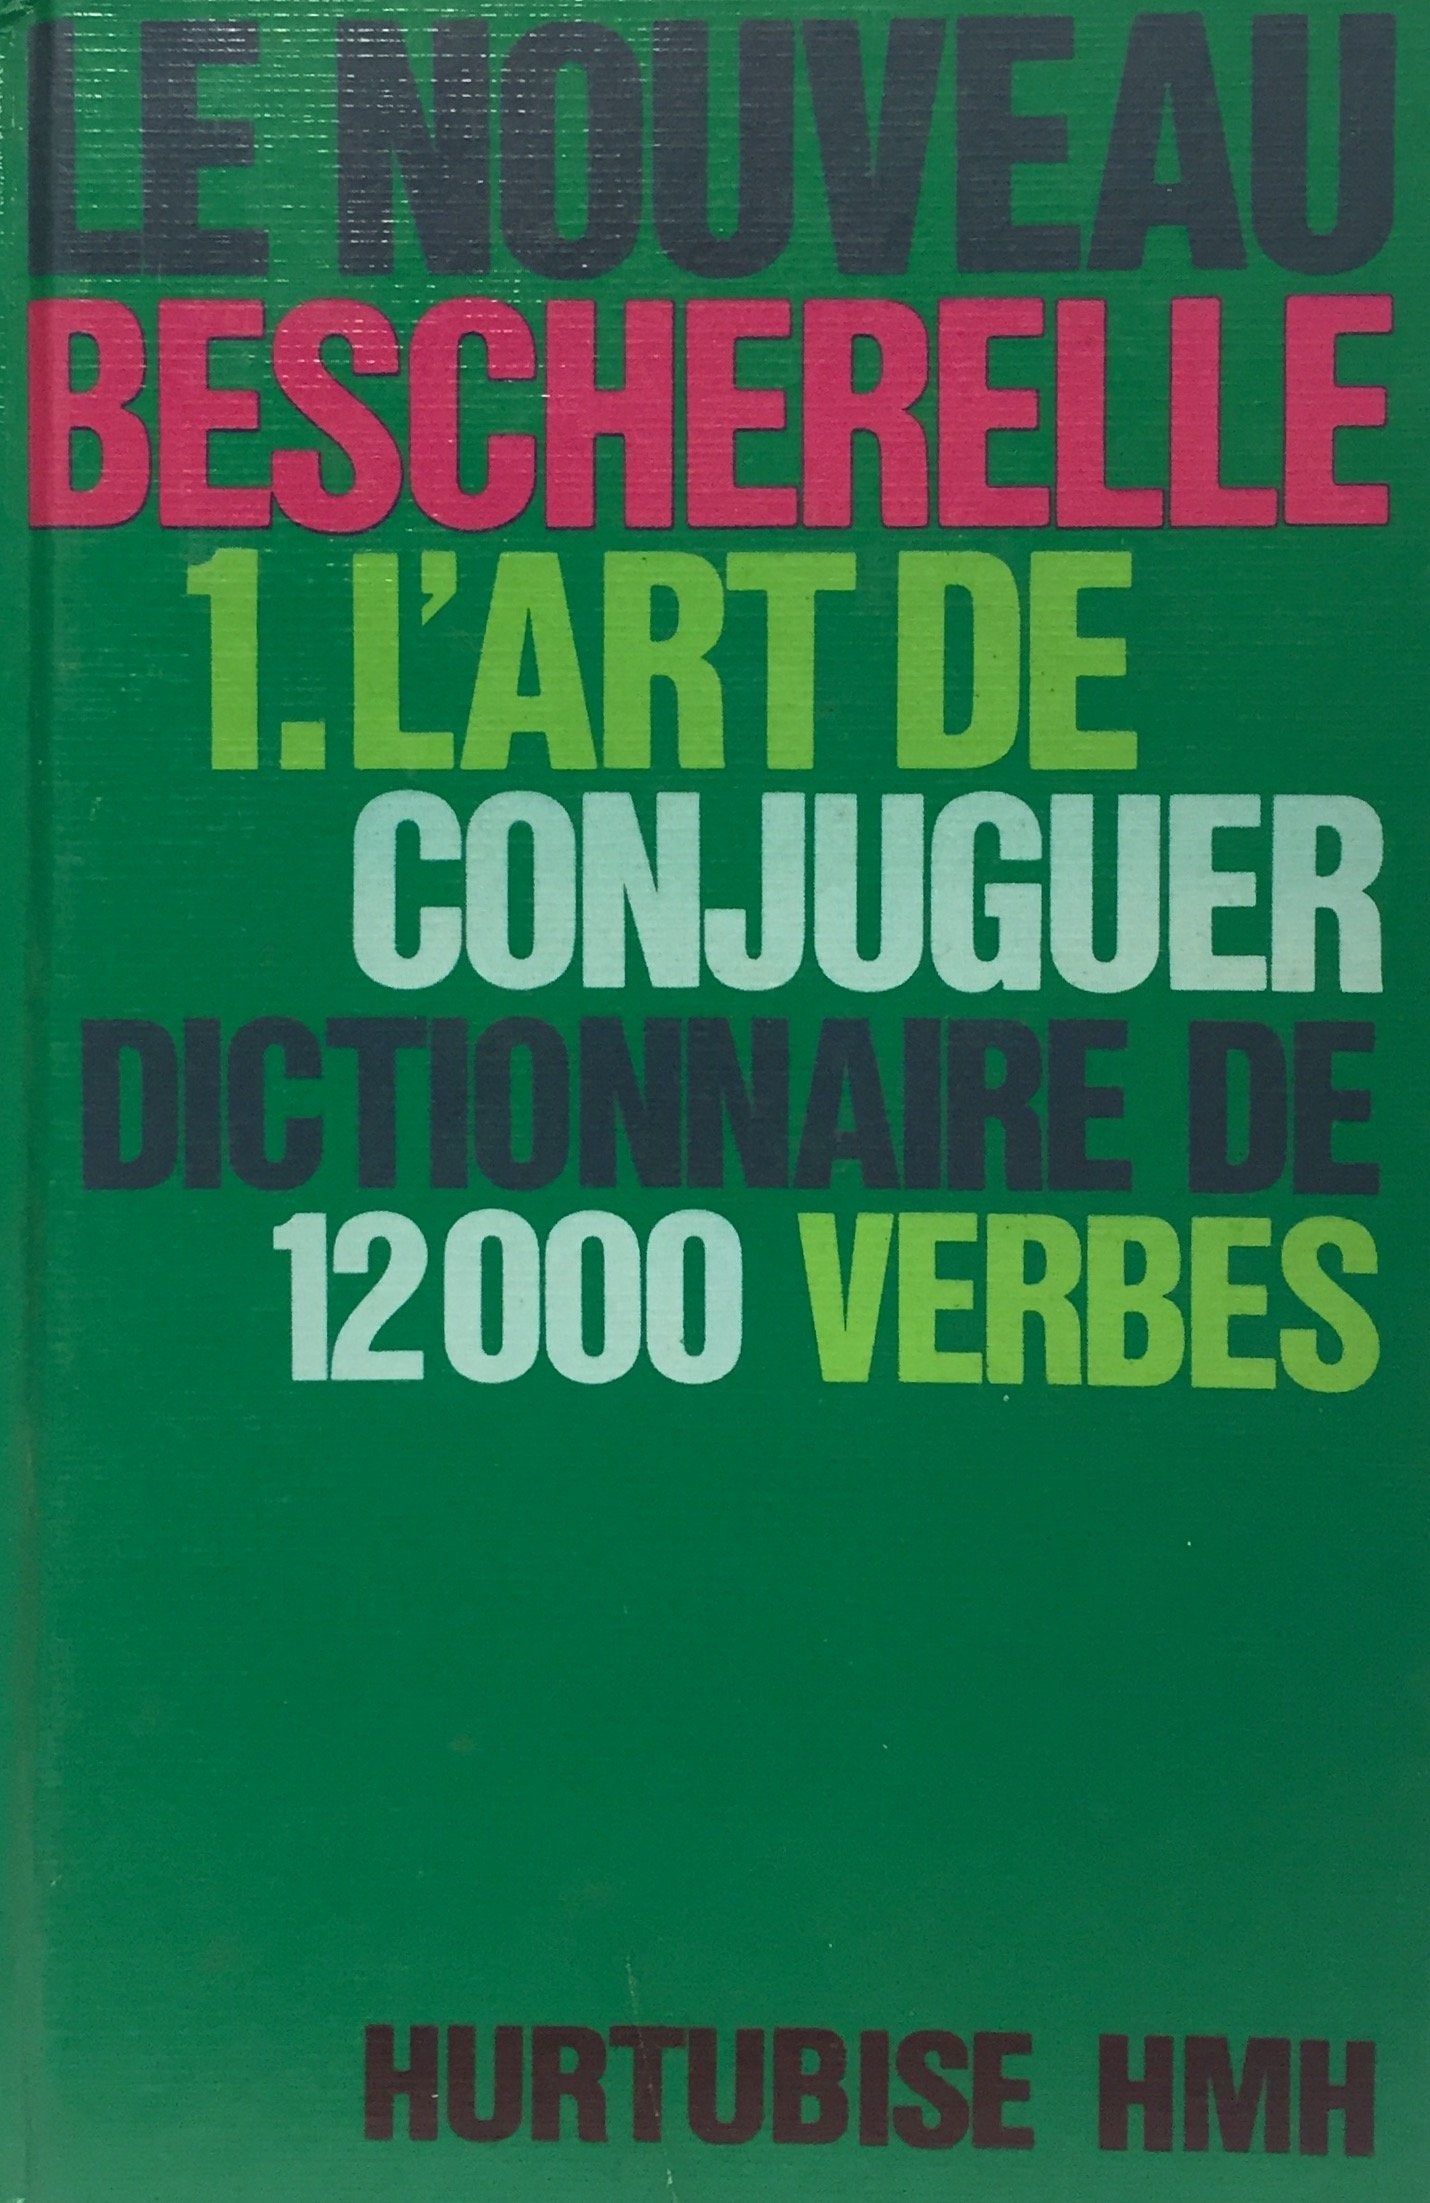 L'Art de conjuguer: Dictionnaire de douze mille verbes - Bescherelle